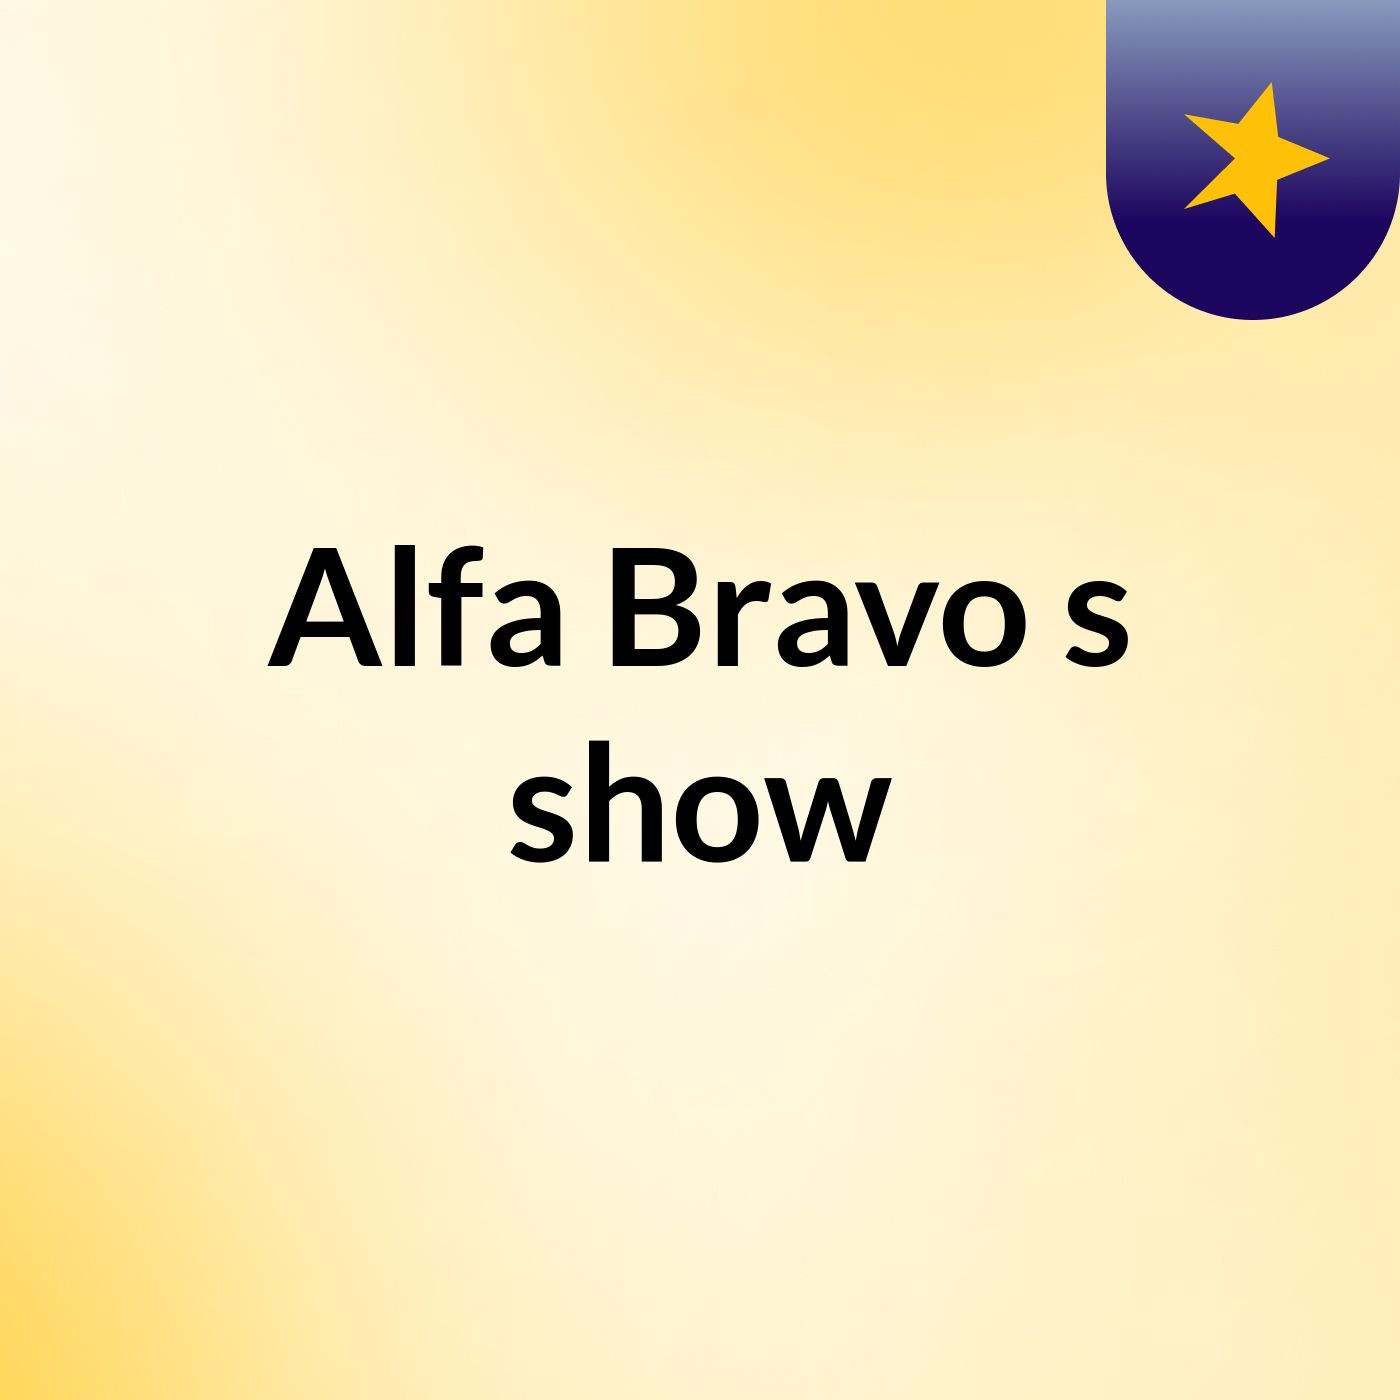 Alfa Bravo's show